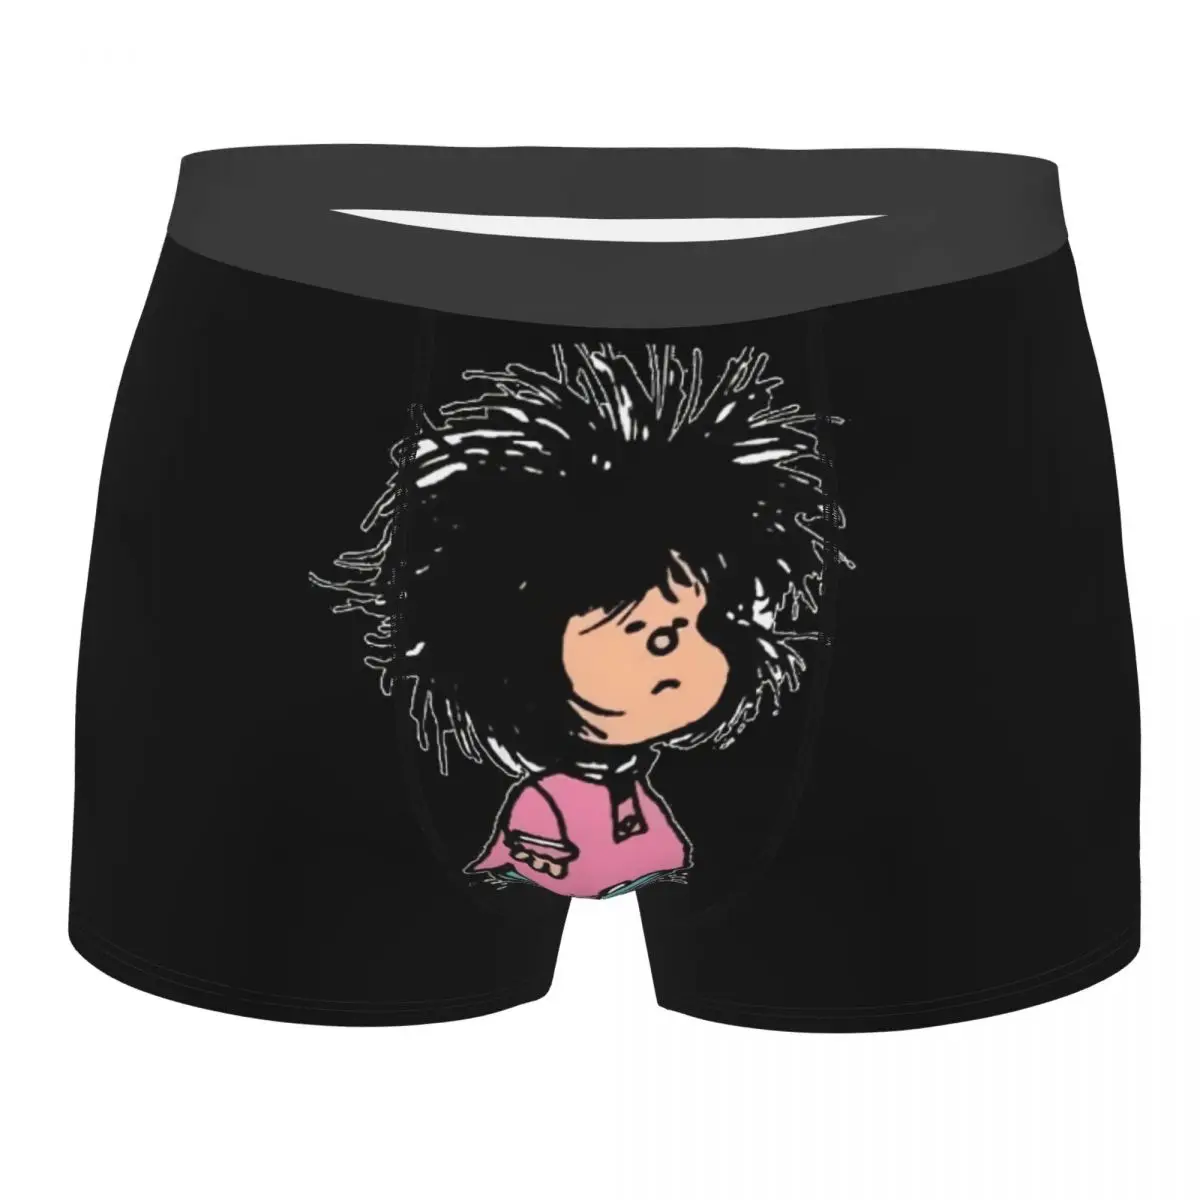 

Мужские трусы-боксеры Mafalda Quino, дышащее забавное нижнее белье, высококачественные шорты с принтом, идея для подарка